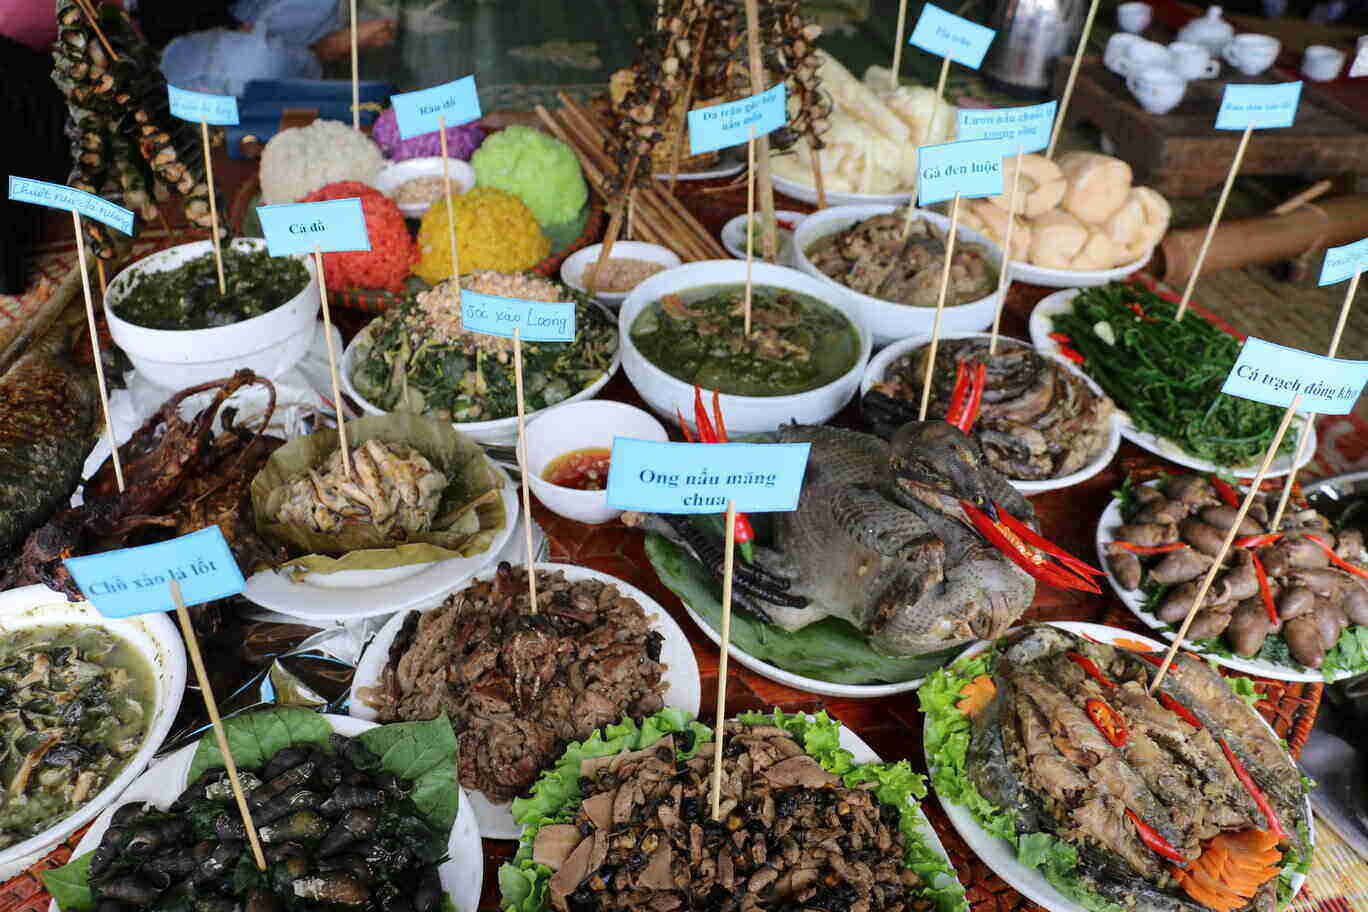 Tại lễ hội, còn có các gian hàng của các xã, thị trấn trưng bày sản phẩm về nông nghiệp, các món ẩm thực dân tộc mang đậm bản sắc văn hóa vùng miền. Ảnh: Khánh Linh